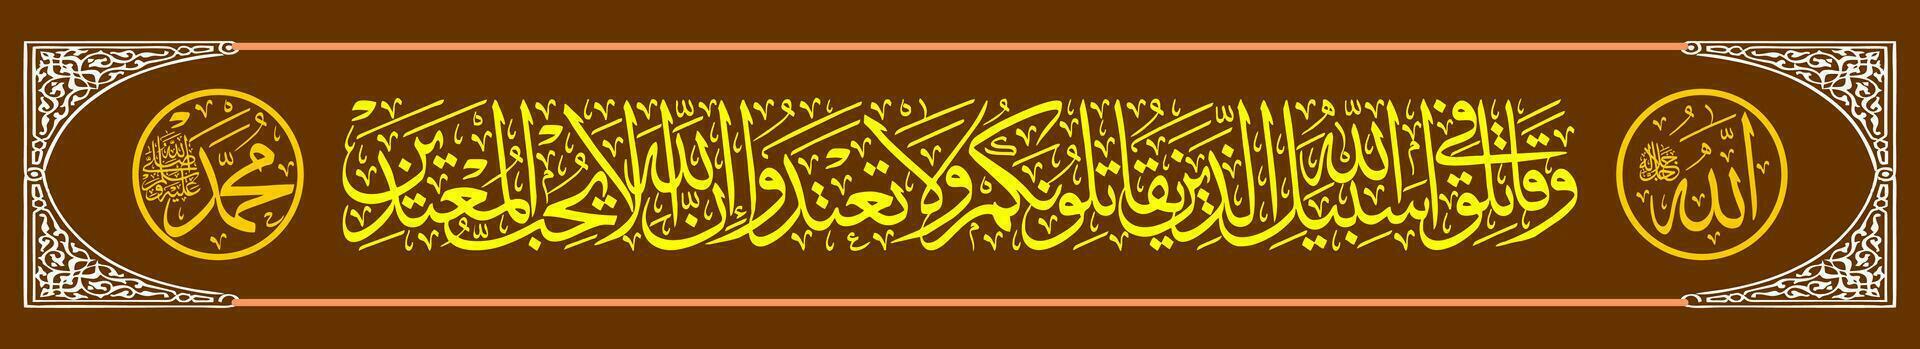 Kalligraphie Thuluth al Koran surat al Baqara 190 welche meint und Kampf im das Weg von Allah jene Wer Kampf Du, aber tun nicht gehen darüber hinaus das Grenze. In der Tat, vektor